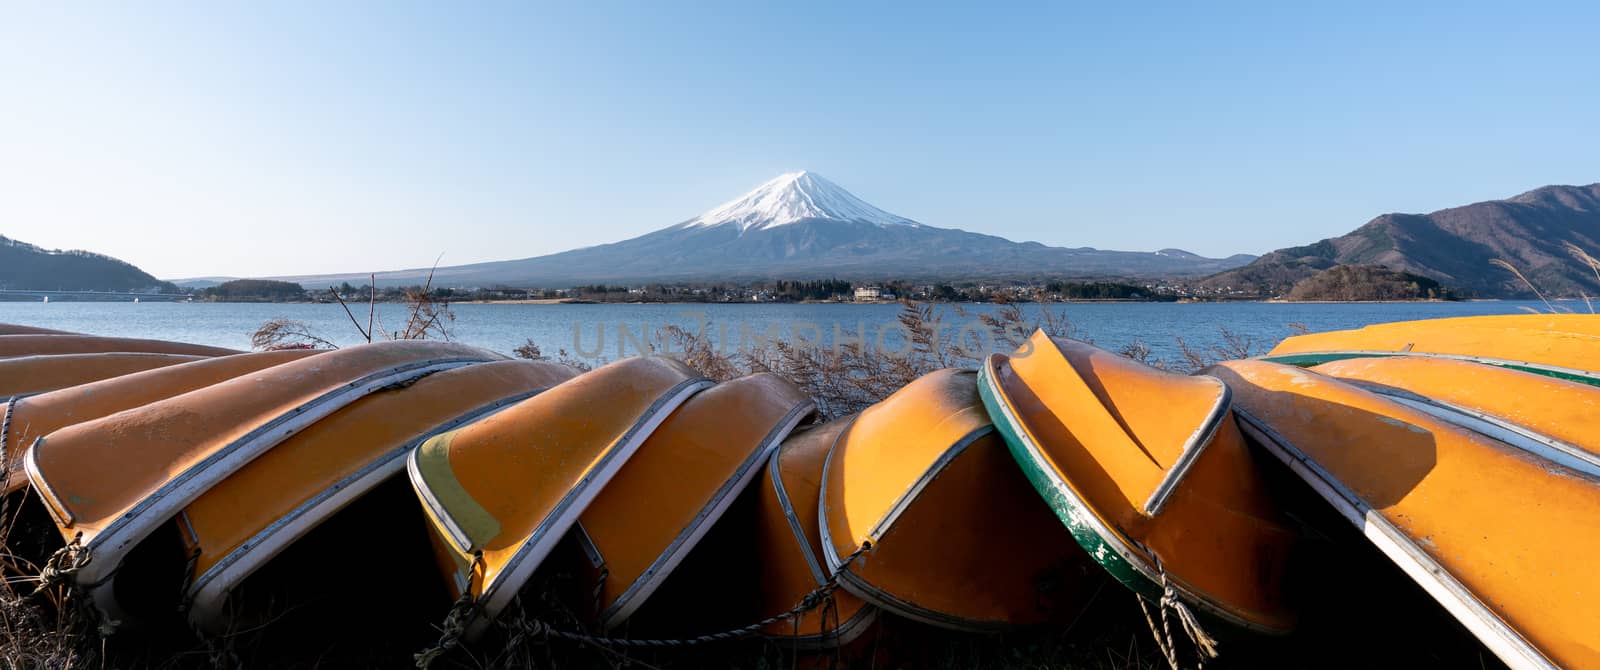 View of Mt. Fuji or Fuji-san with yellow boat and clear sky at lake kawaguchiko, Japan.